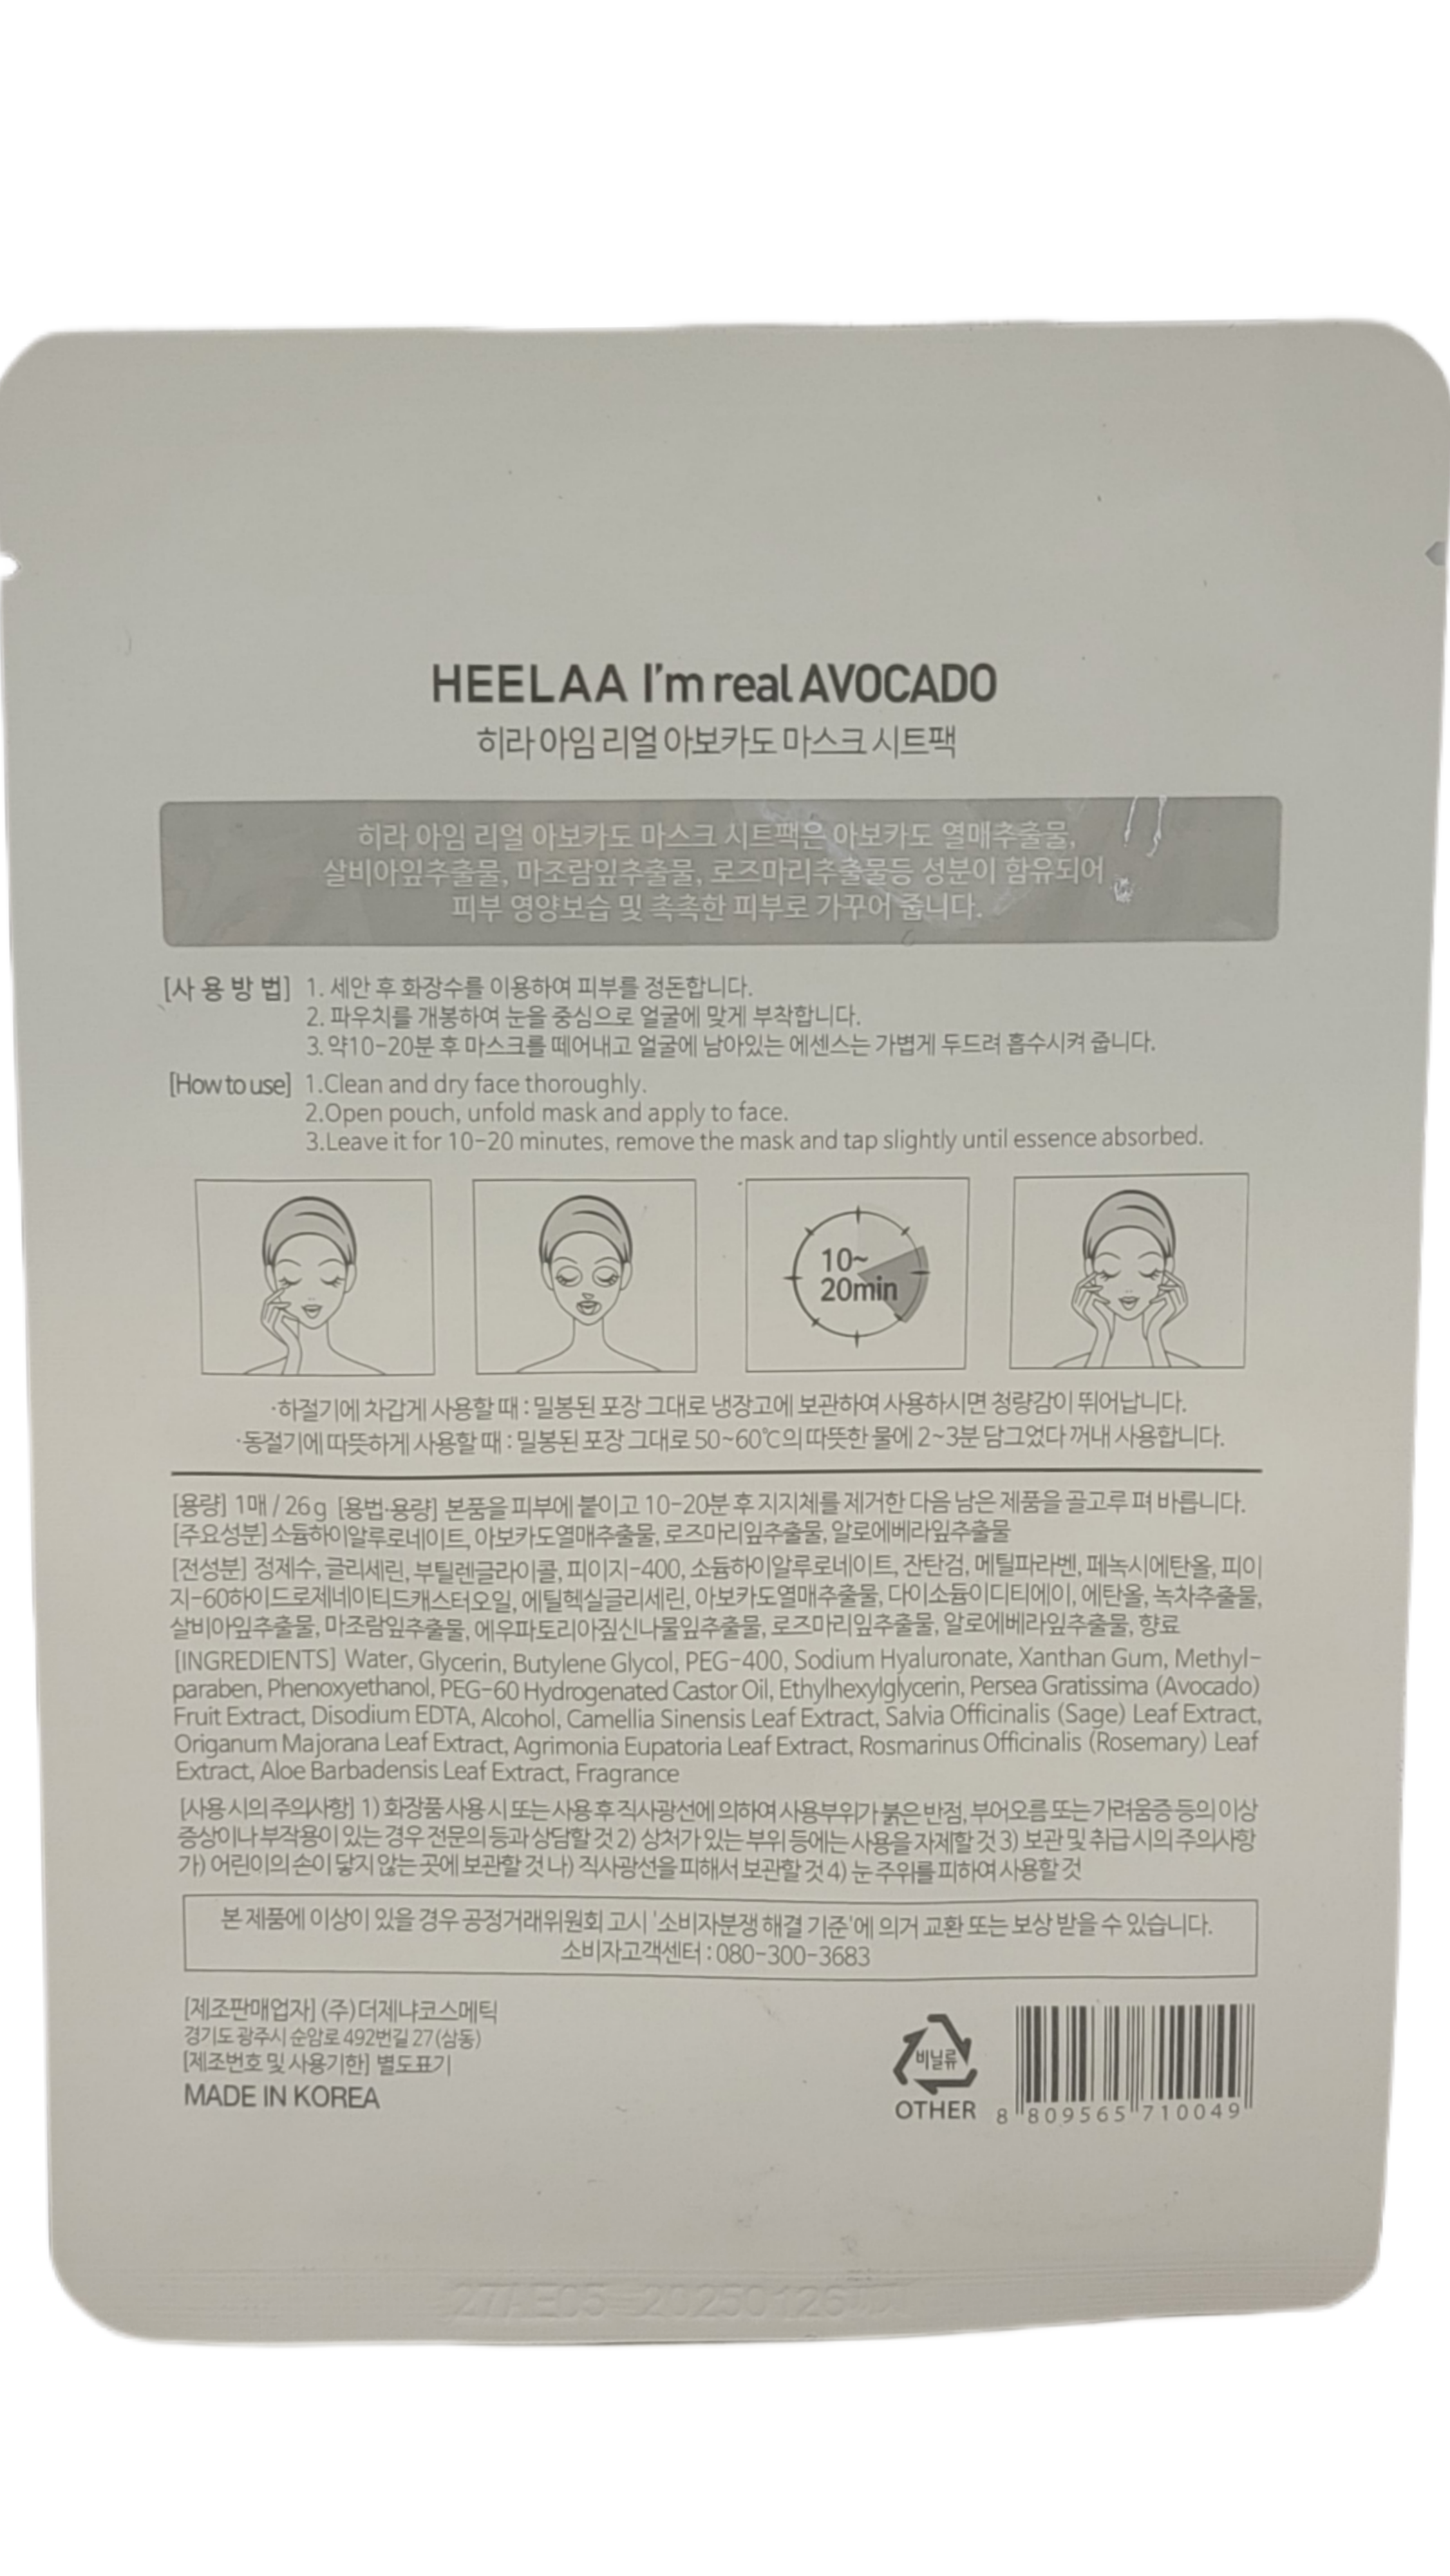 Heelaa “I’m Real Avocado”